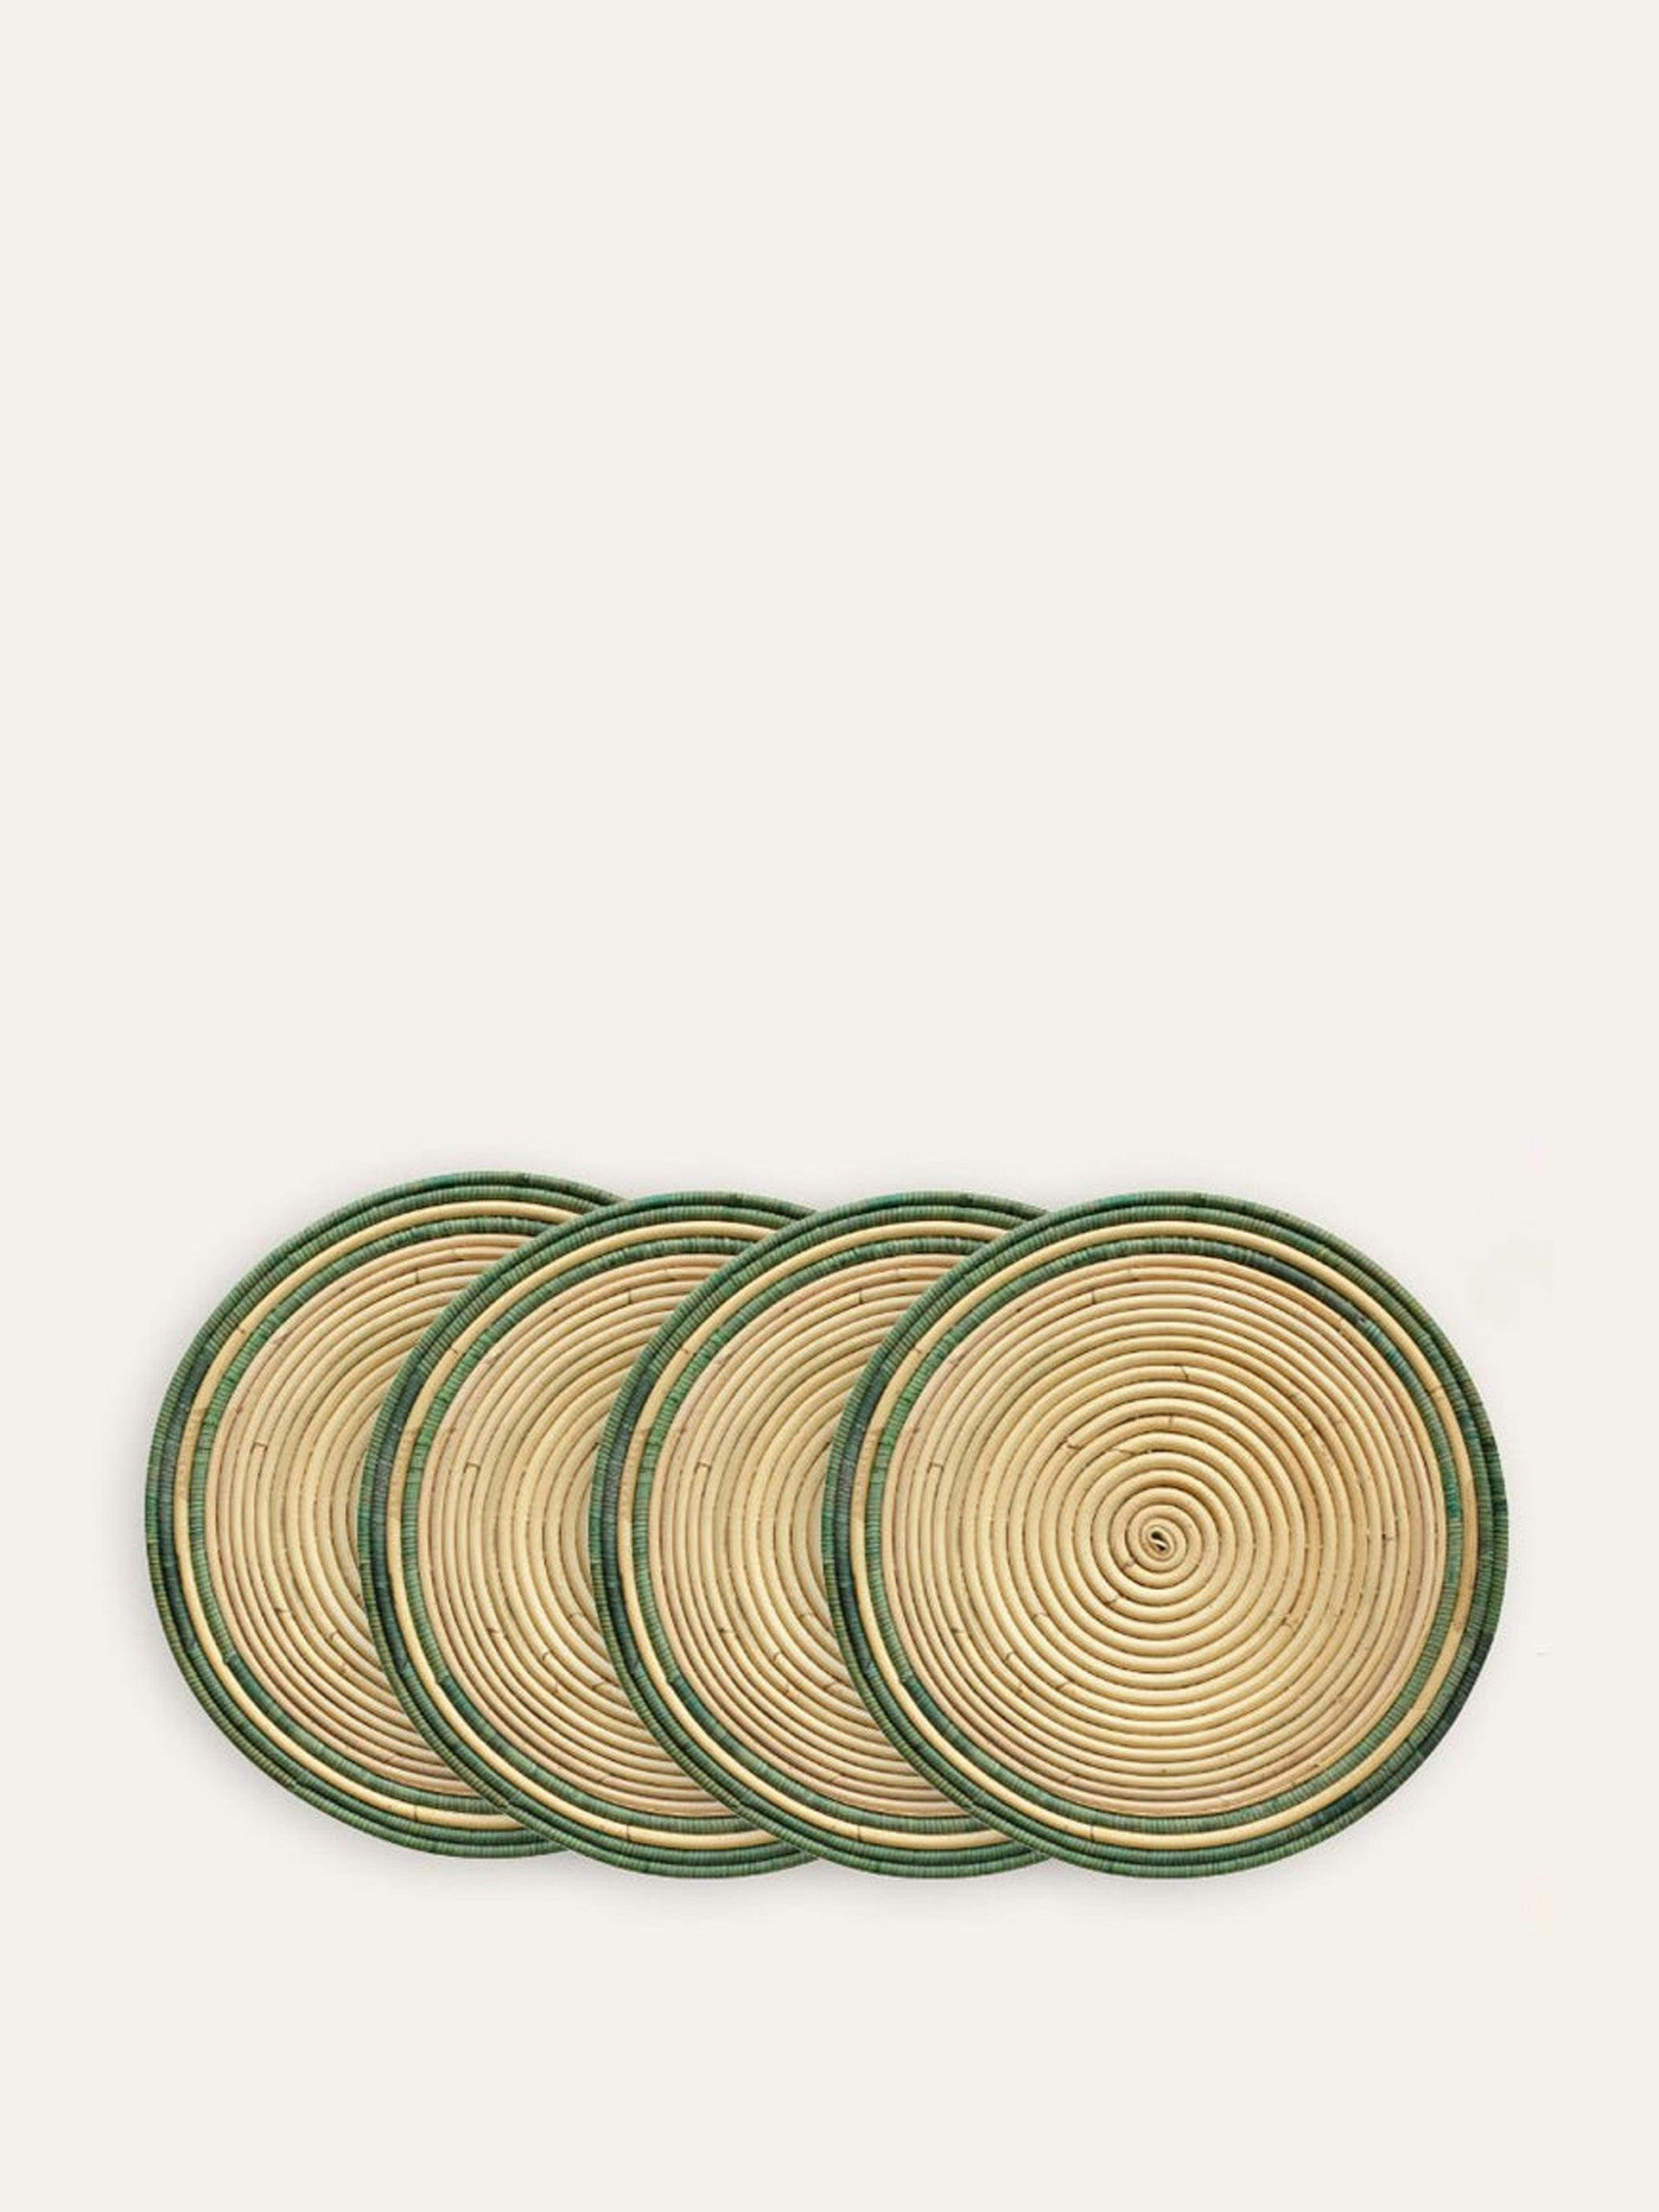 Handwoven circular rattan placemats (set of 4)